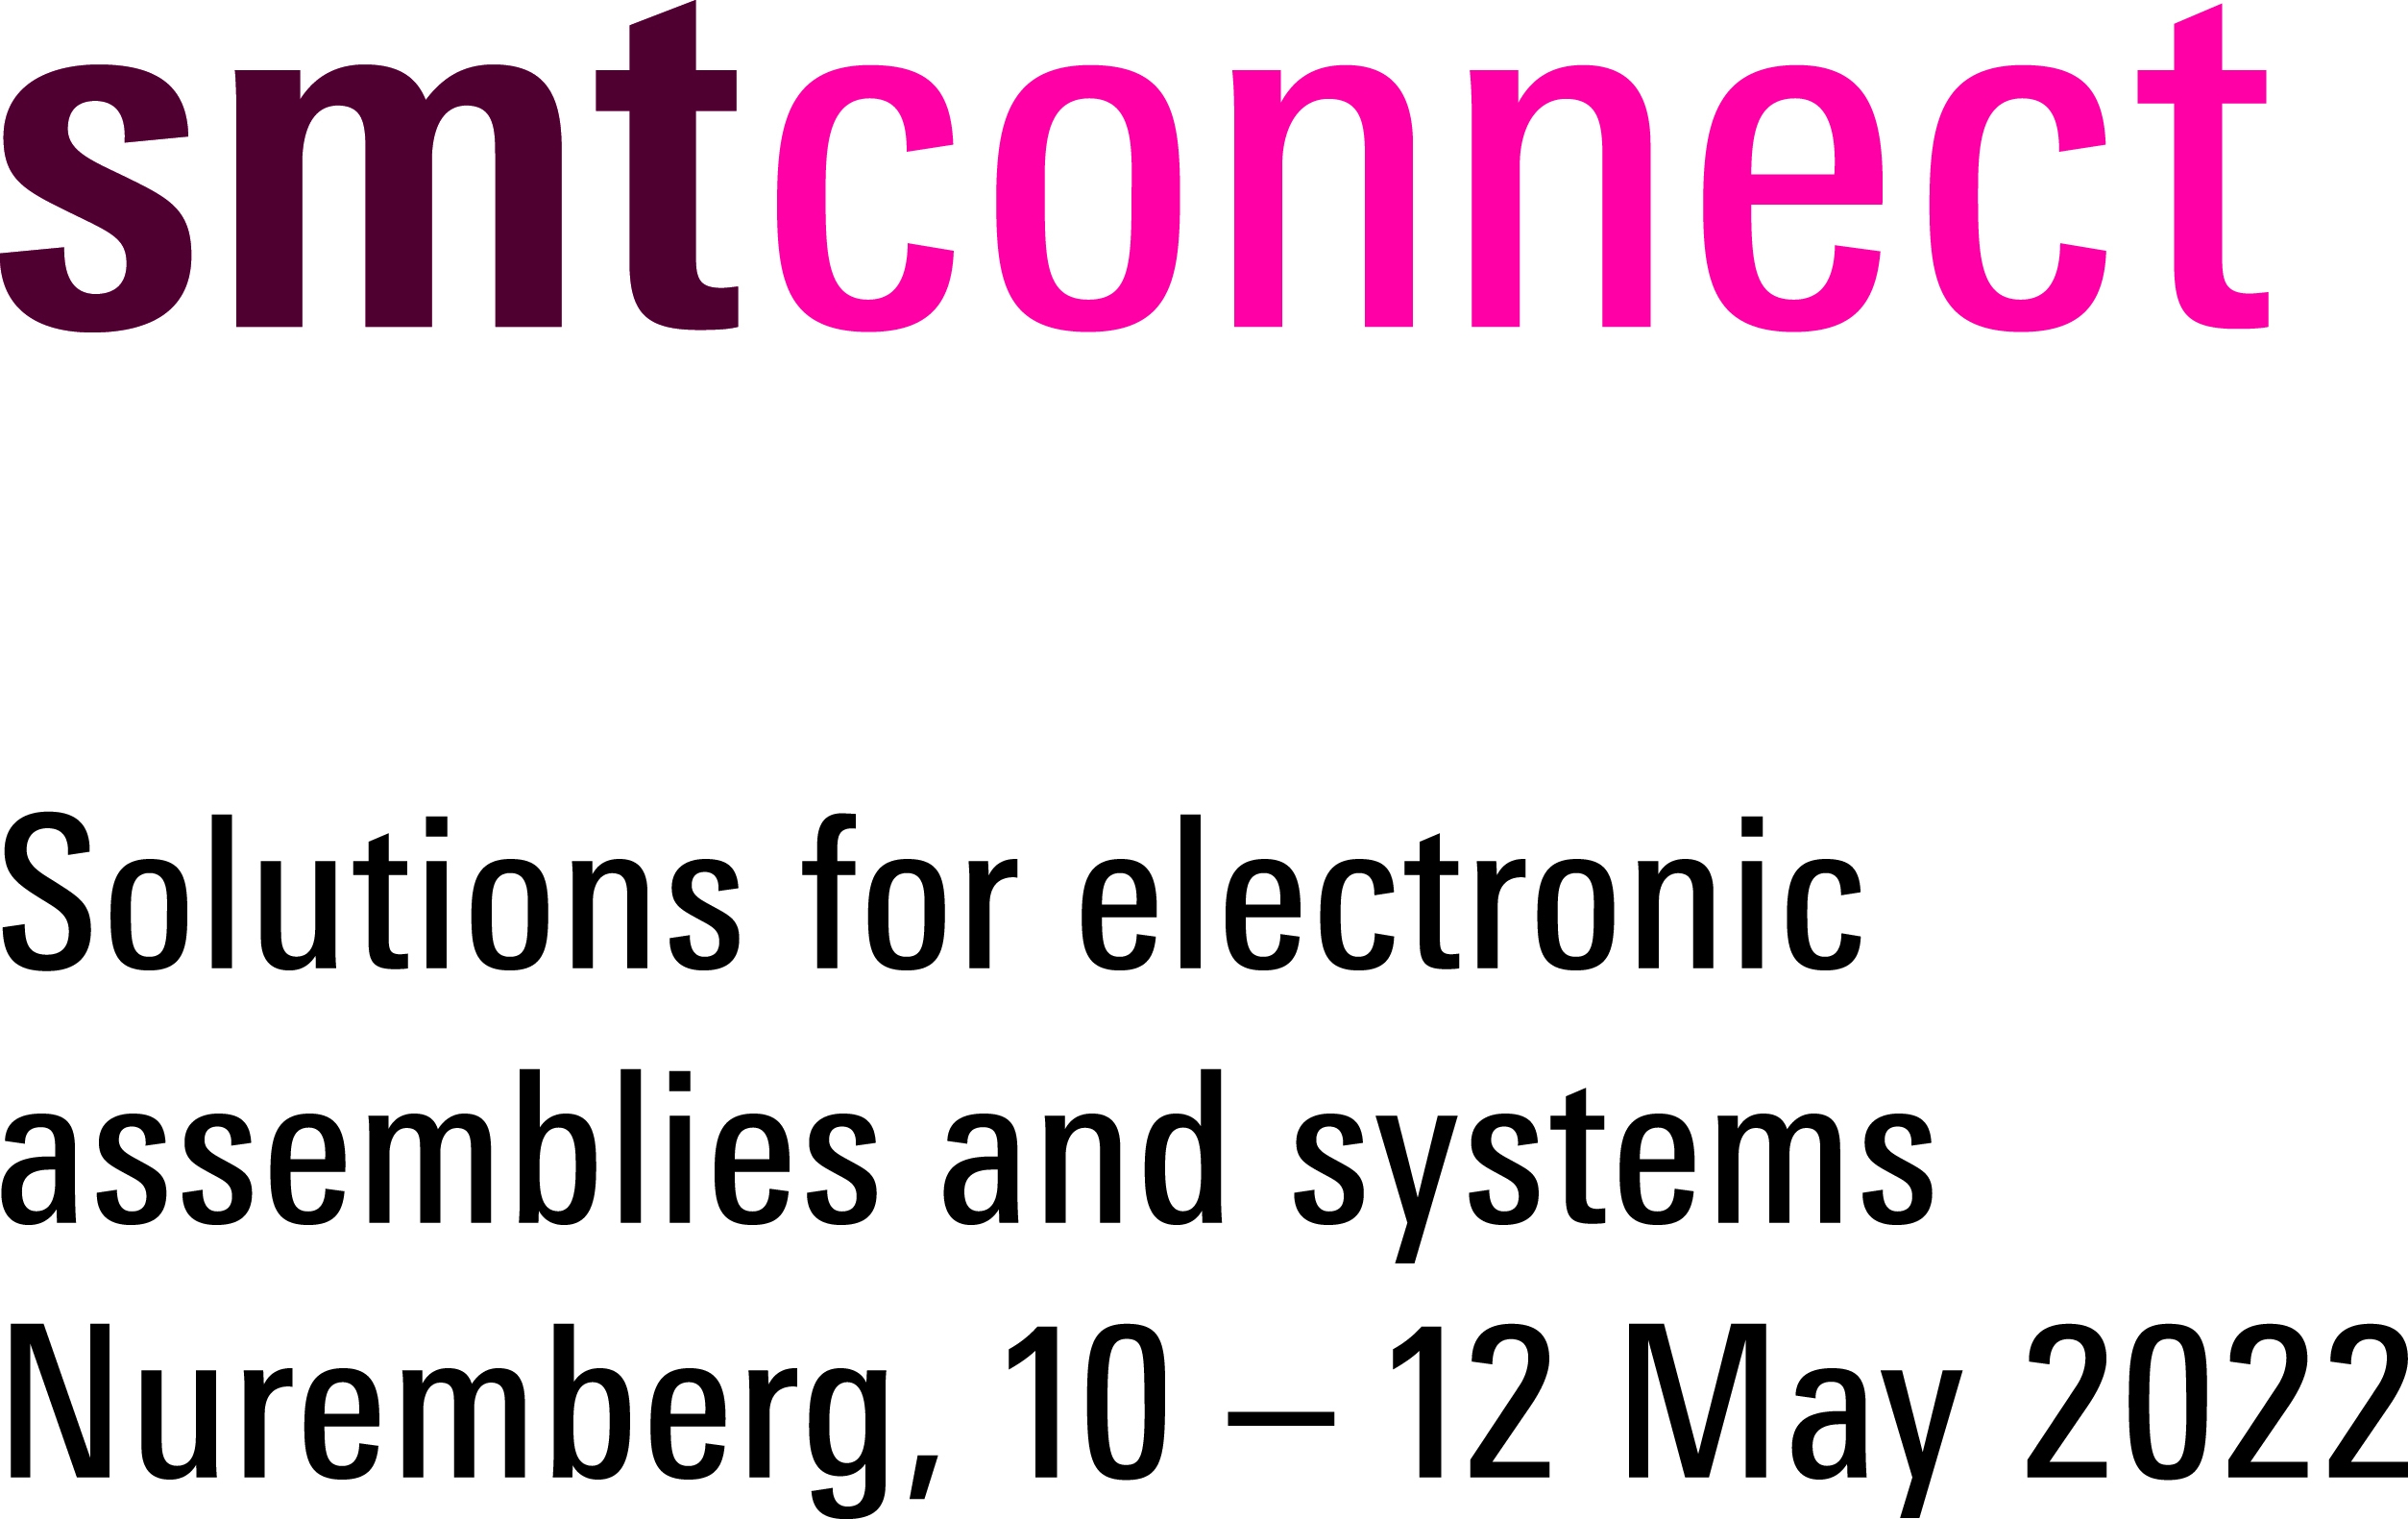 SMTconnect fuarı 10-12 Mayıs tarihlerinde Nürnberg'de